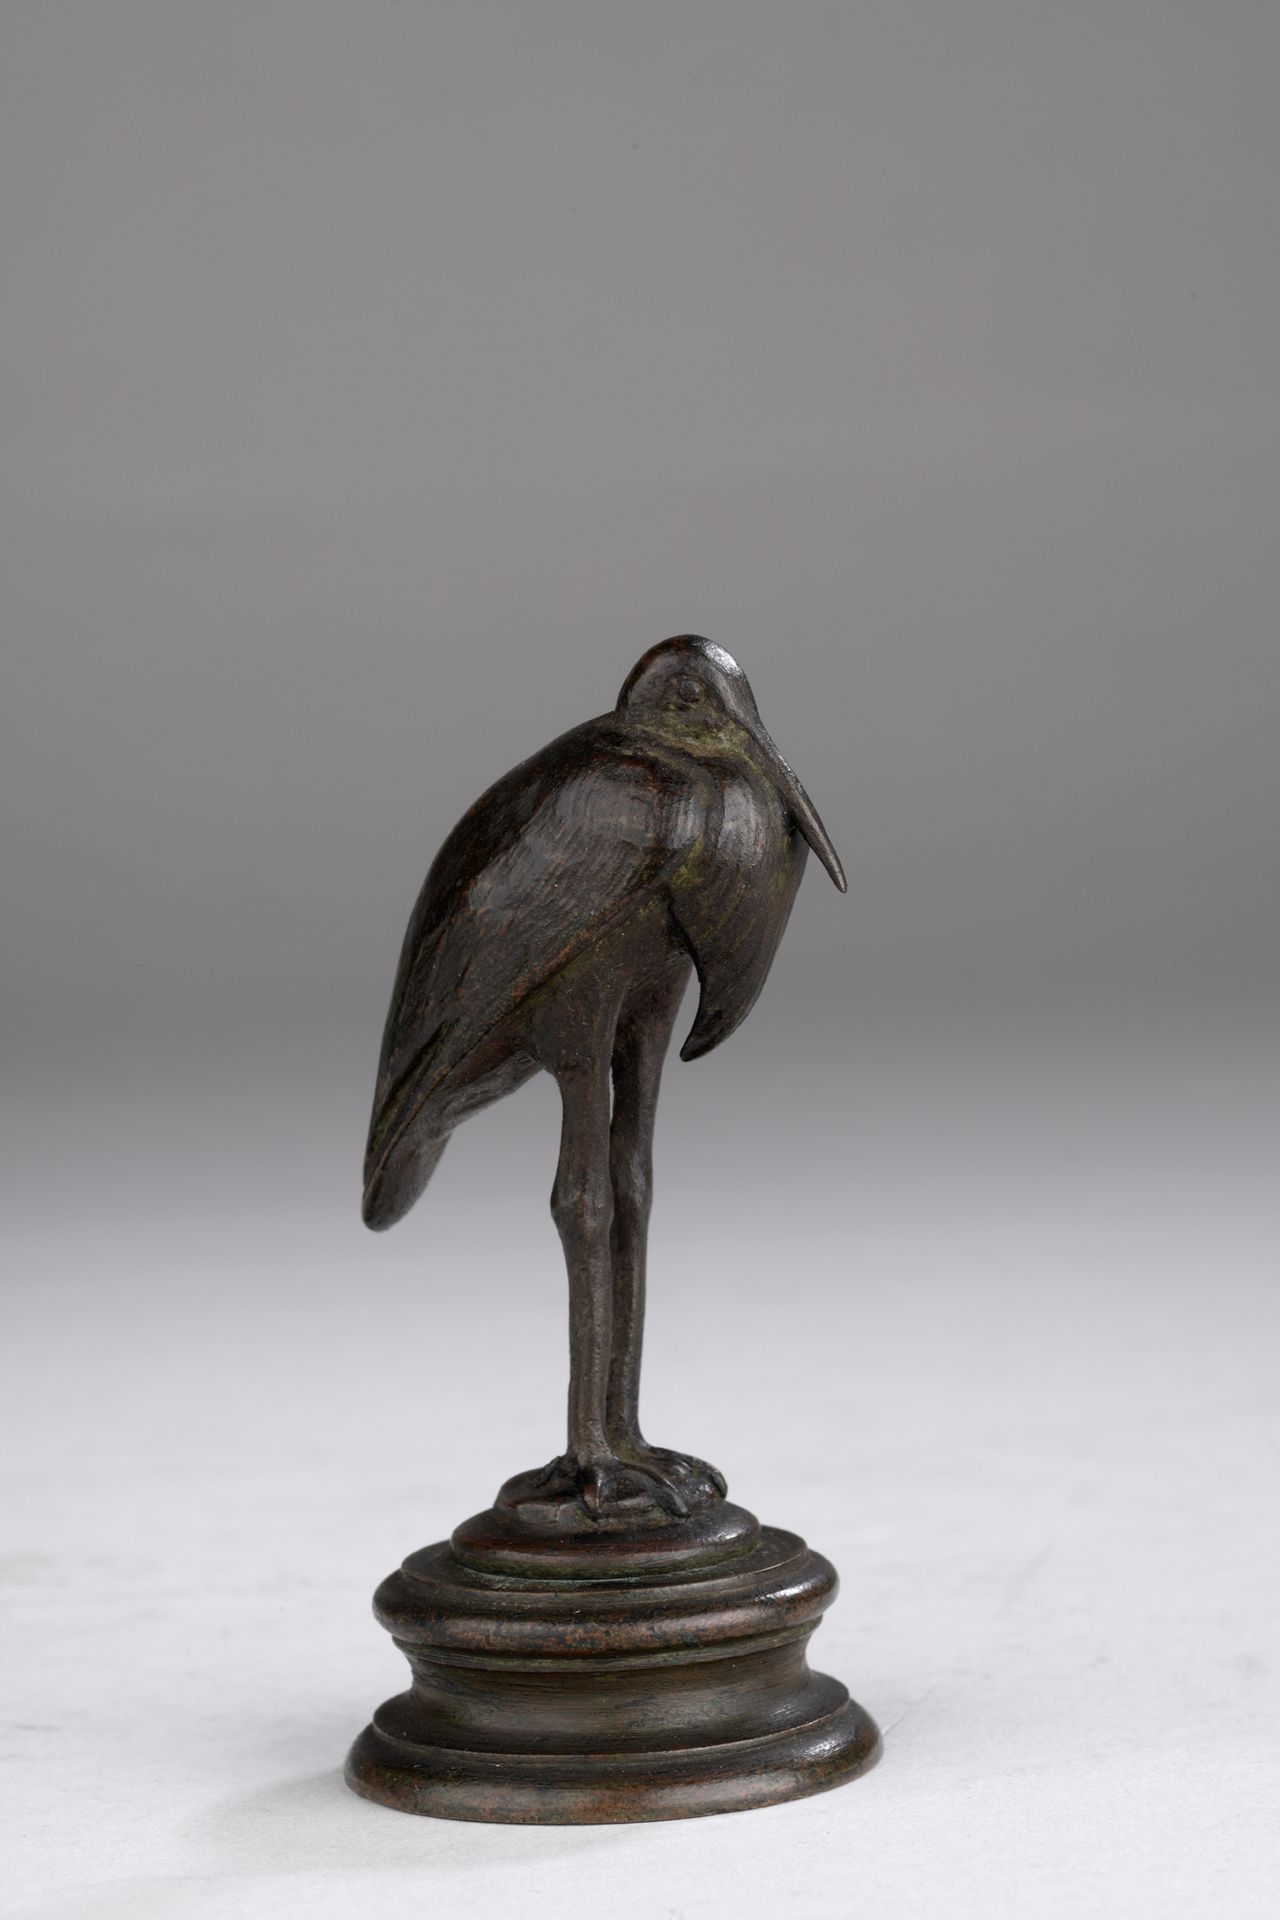 Null 安托万-路易斯-巴耶（1795-1875）

基座上的鹳鸟

由巴耶工作室铸造

带有棕黑色铜锈的青铜器

阳台上印有 "BARYE "的字样

H.&hellip;